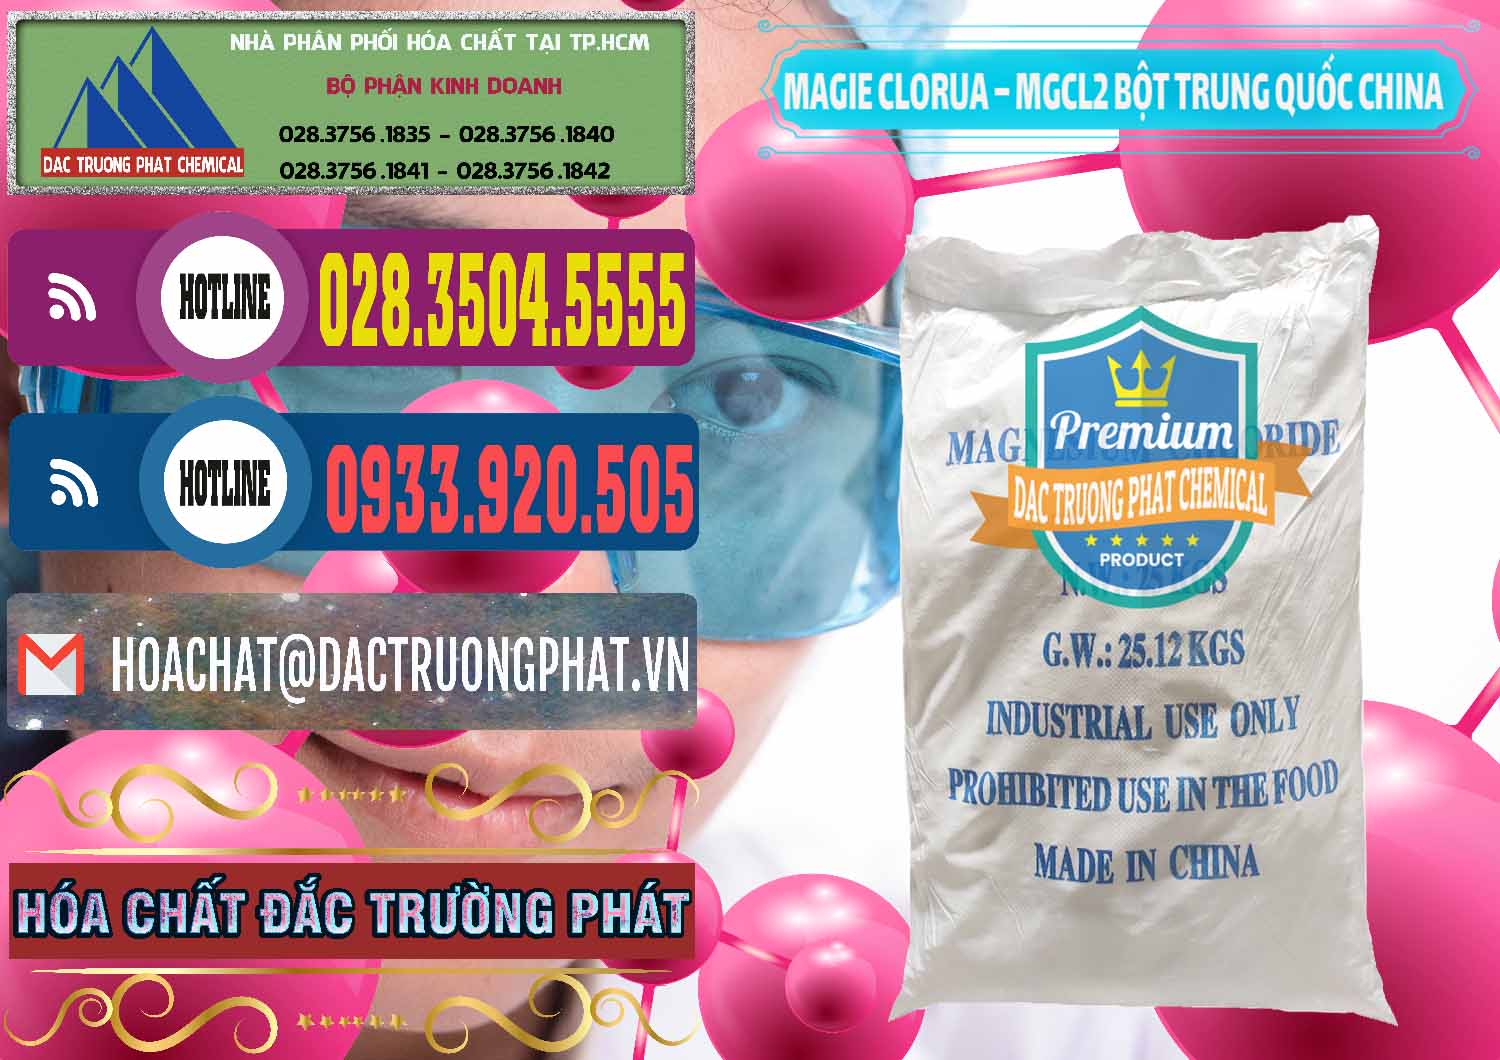 Cty kinh doanh ( bán ) Magie Clorua – MGCL2 96% Dạng Bột Bao Chữ Xanh Trung Quốc China - 0207 - Nơi phân phối - nhập khẩu hóa chất tại TP.HCM - muabanhoachat.com.vn